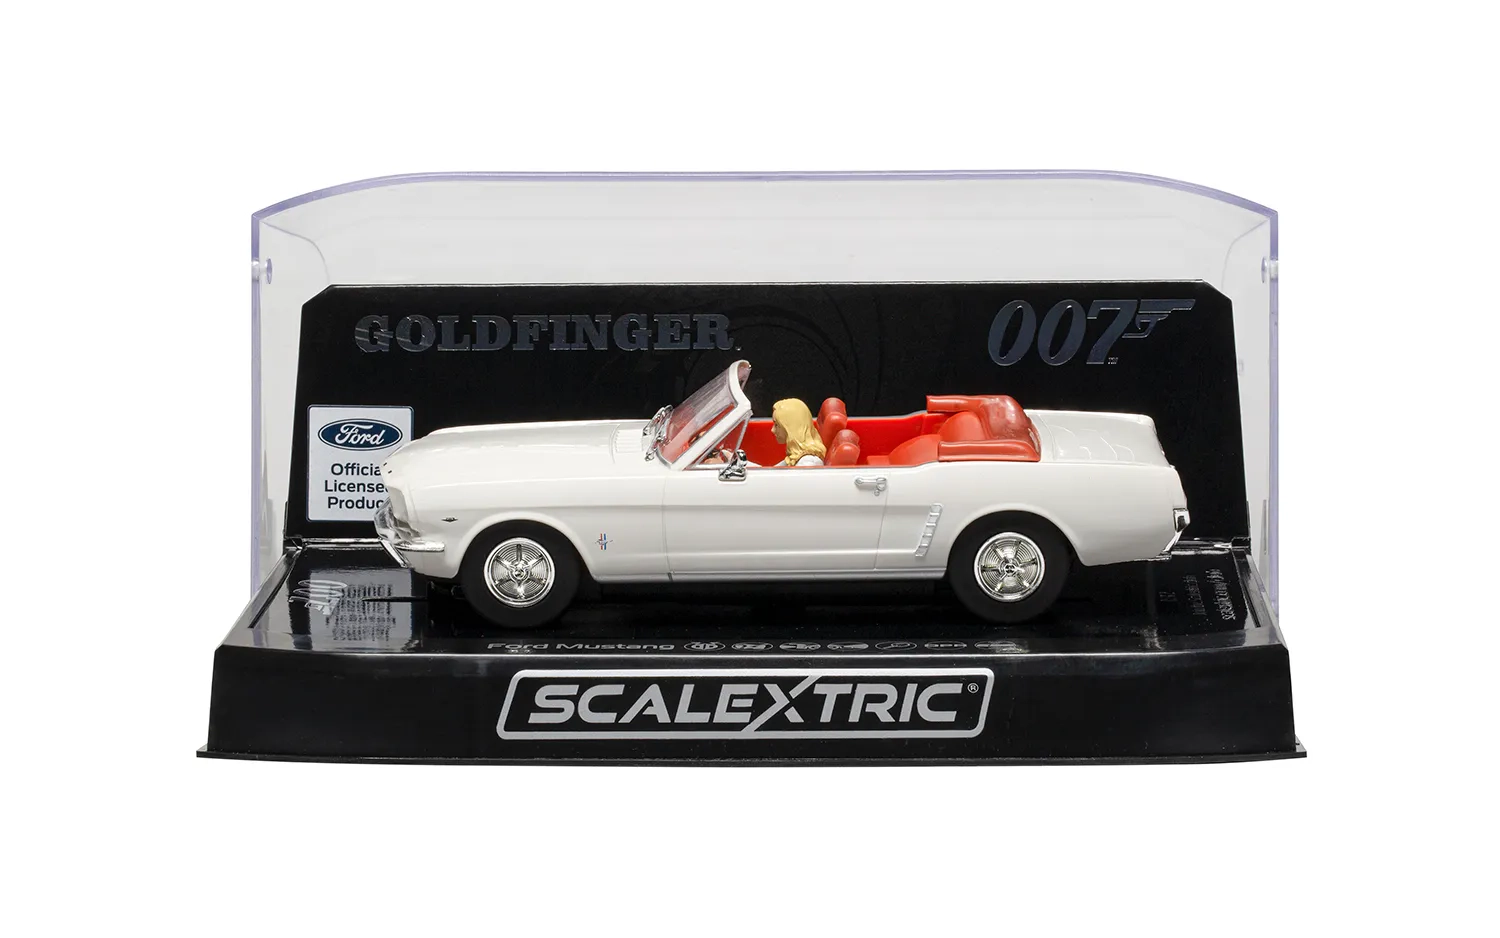 James Bond Ford Mustang – 'Goldfinger'